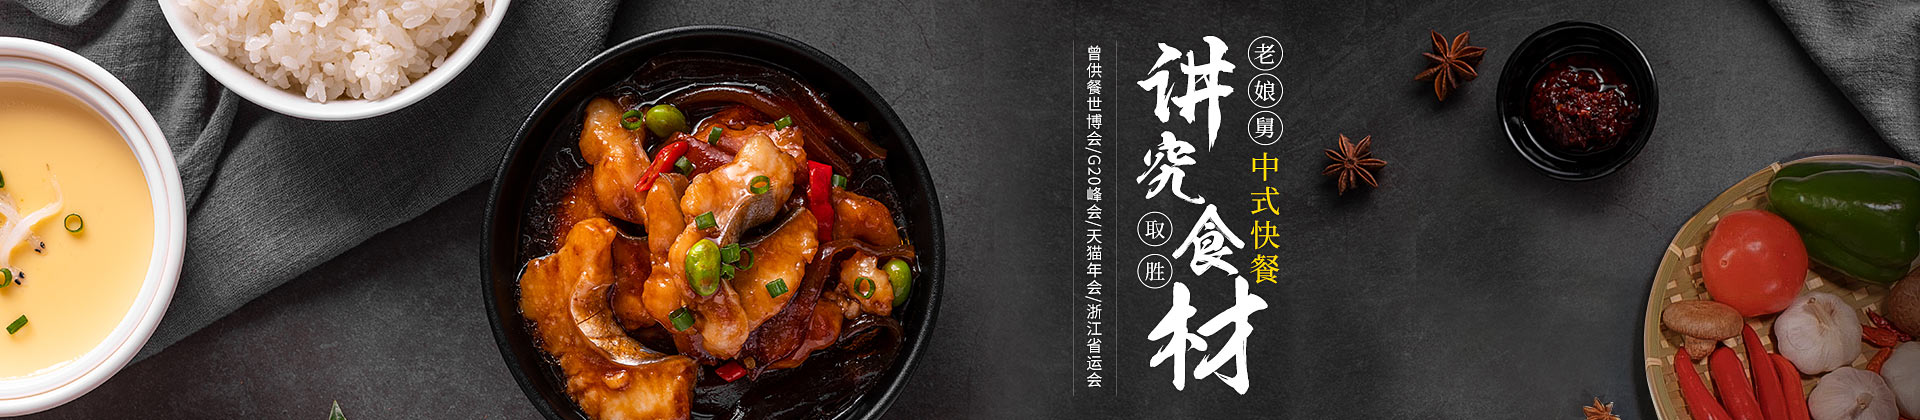 华体会中式快餐  以『讲究食材』取胜